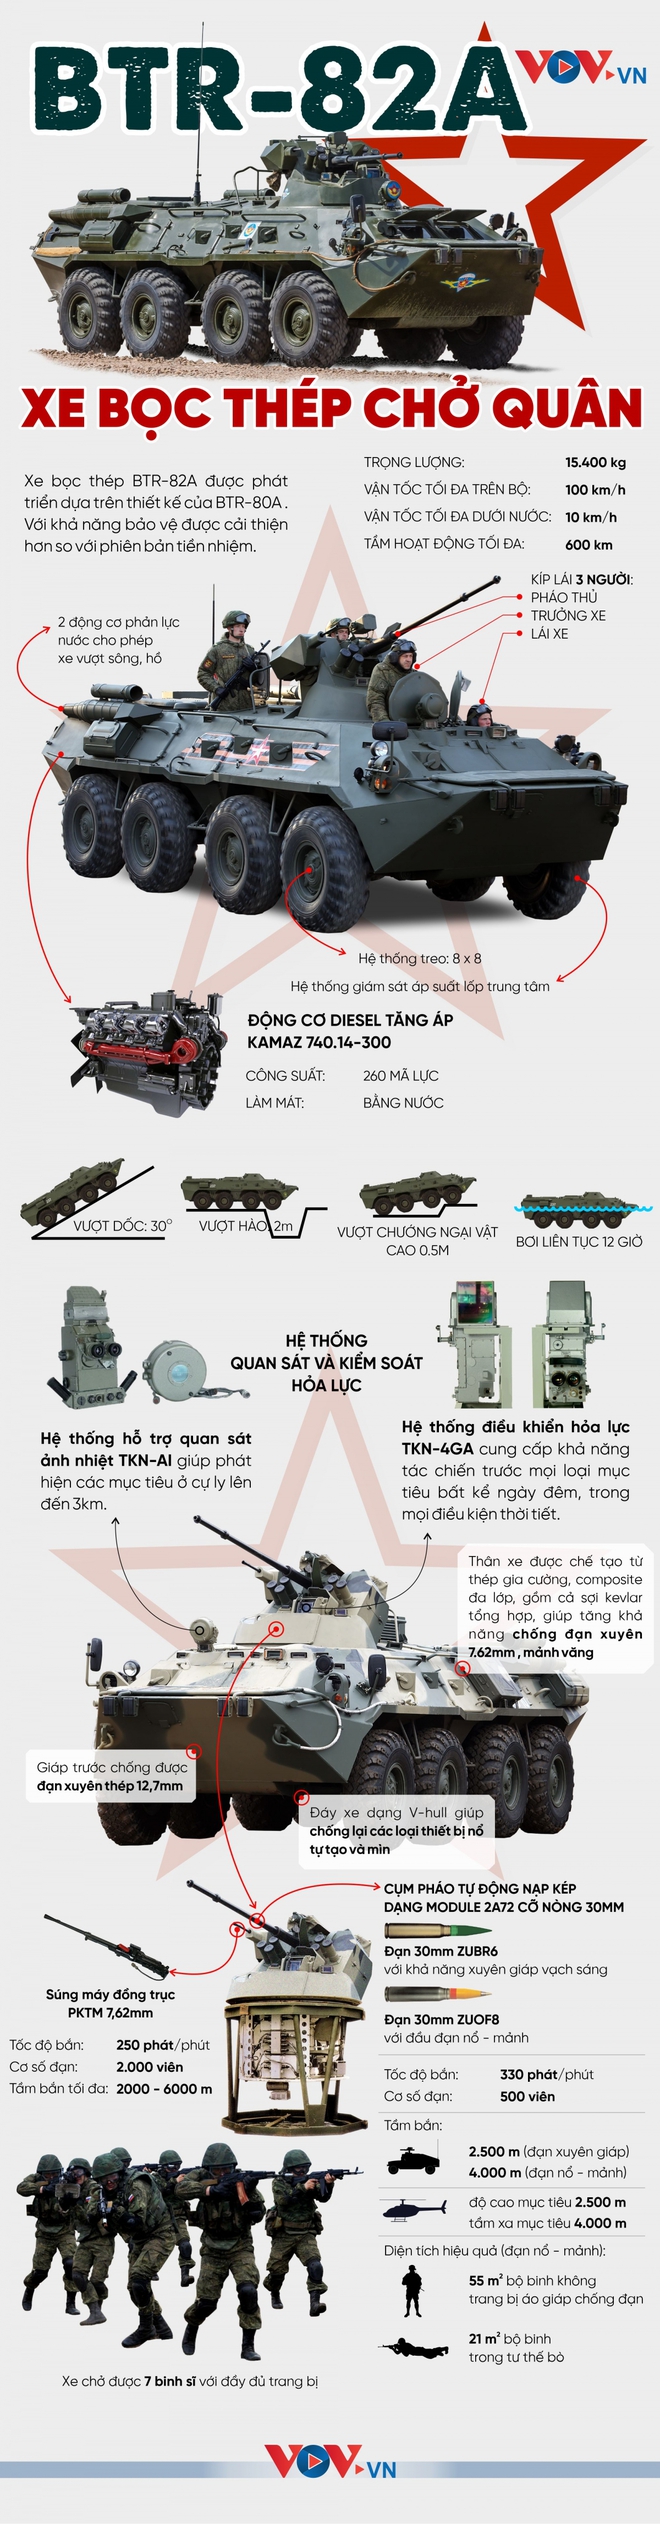 Xe bọc thép chở quân hiện đại của quân đội Nga - BTR-82A - Ảnh 1.